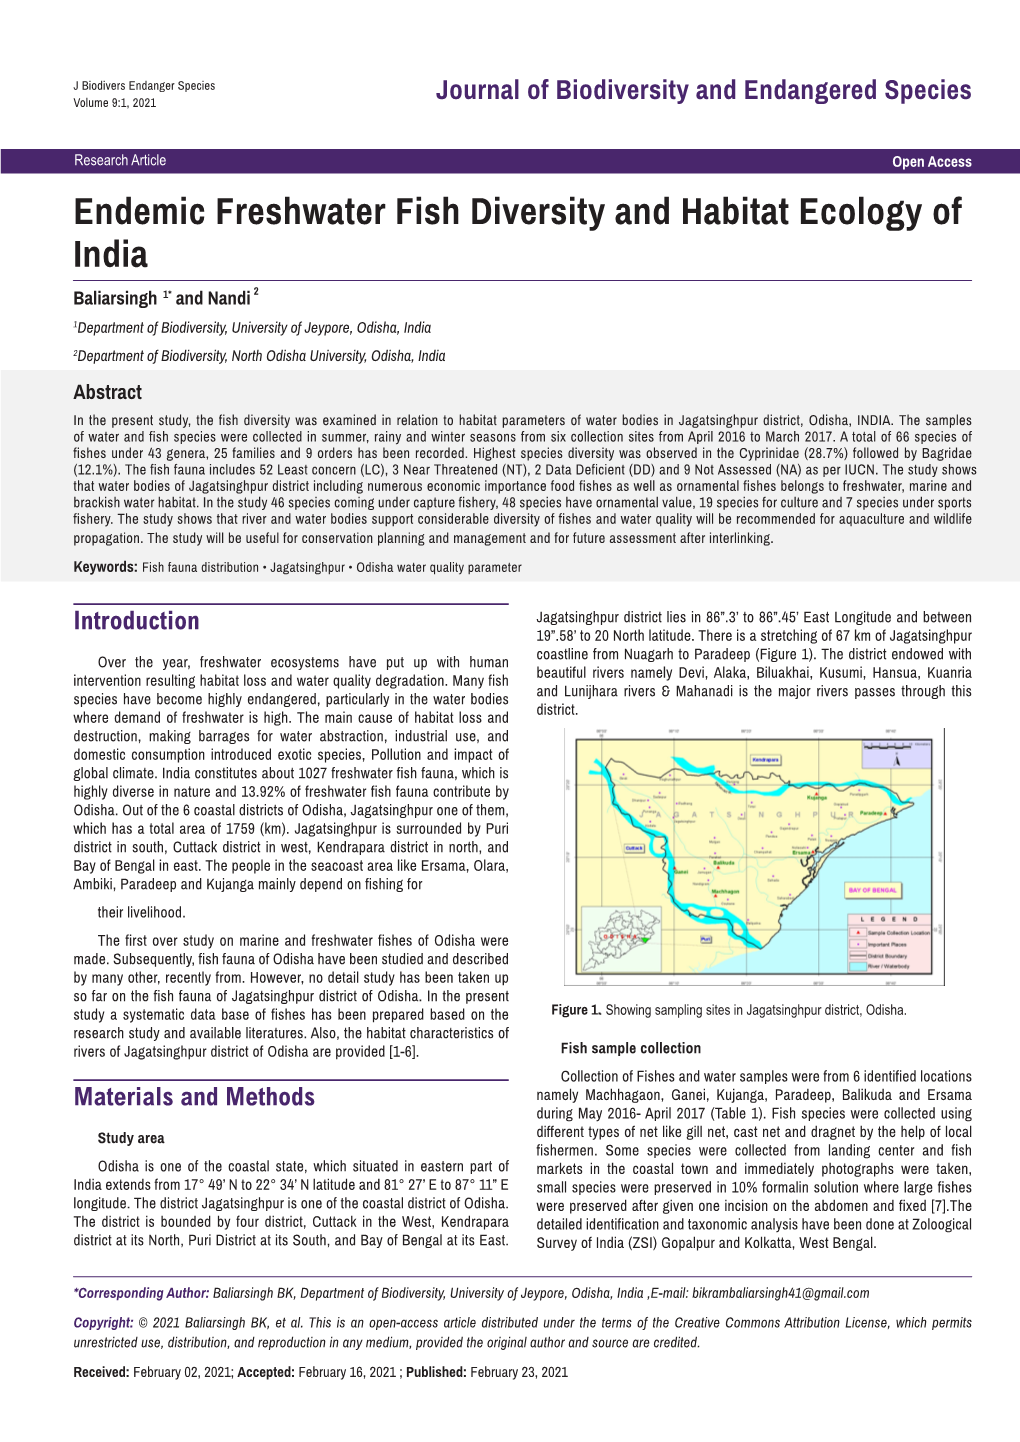 Endemic Freshwater Fish Diversity and Habitat Ecology of India